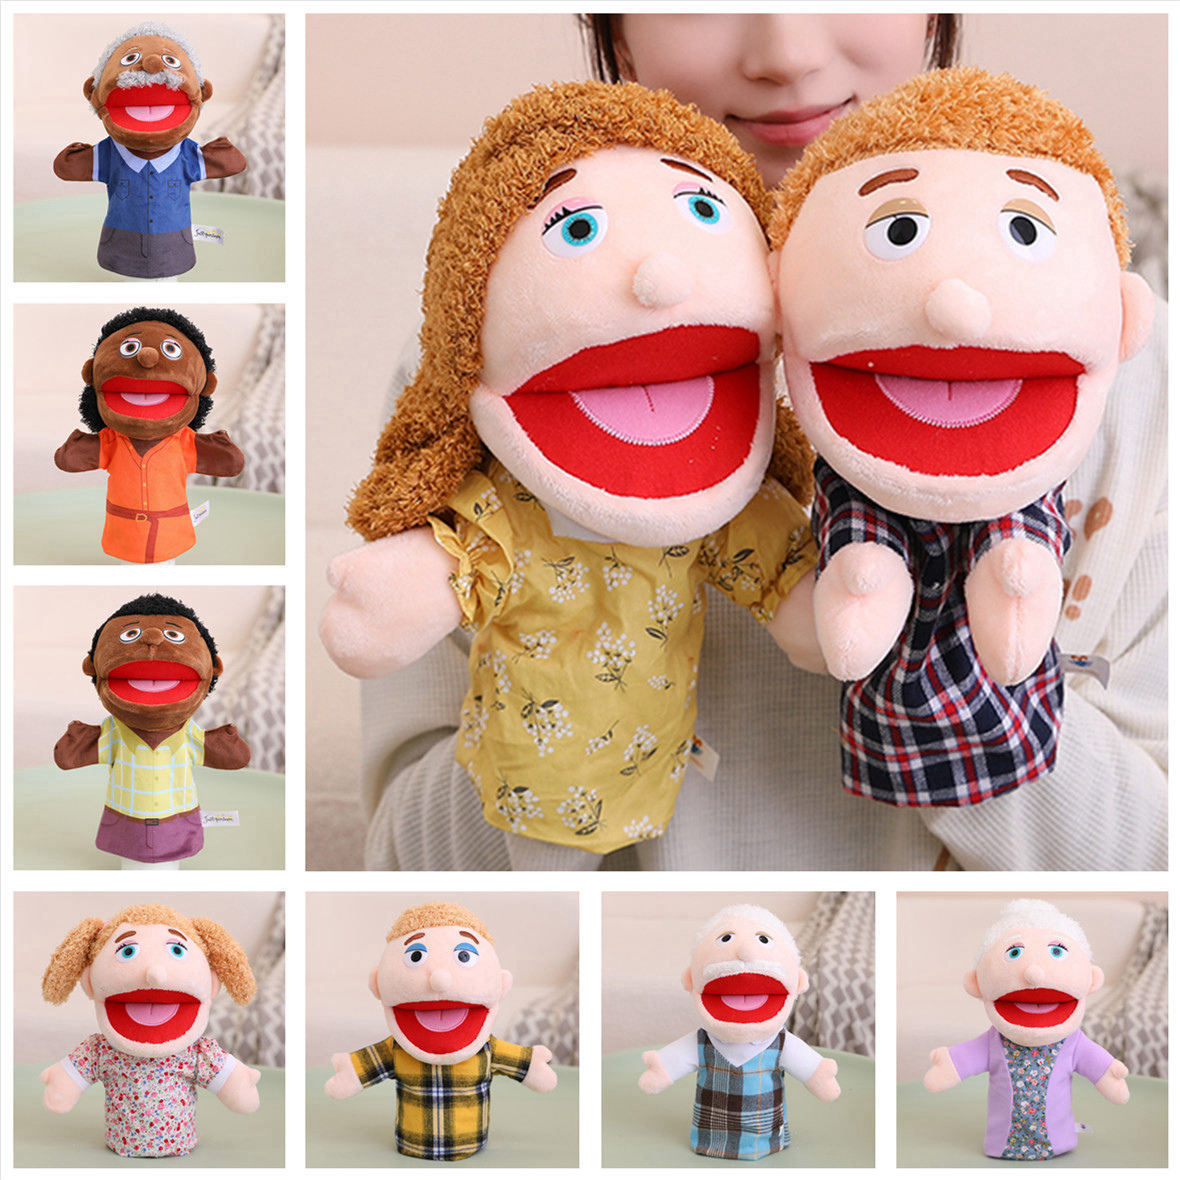 可爱一家人手偶可张嘴人物舞台剧玩偶幼儿园早教道具亲子游戏娃娃